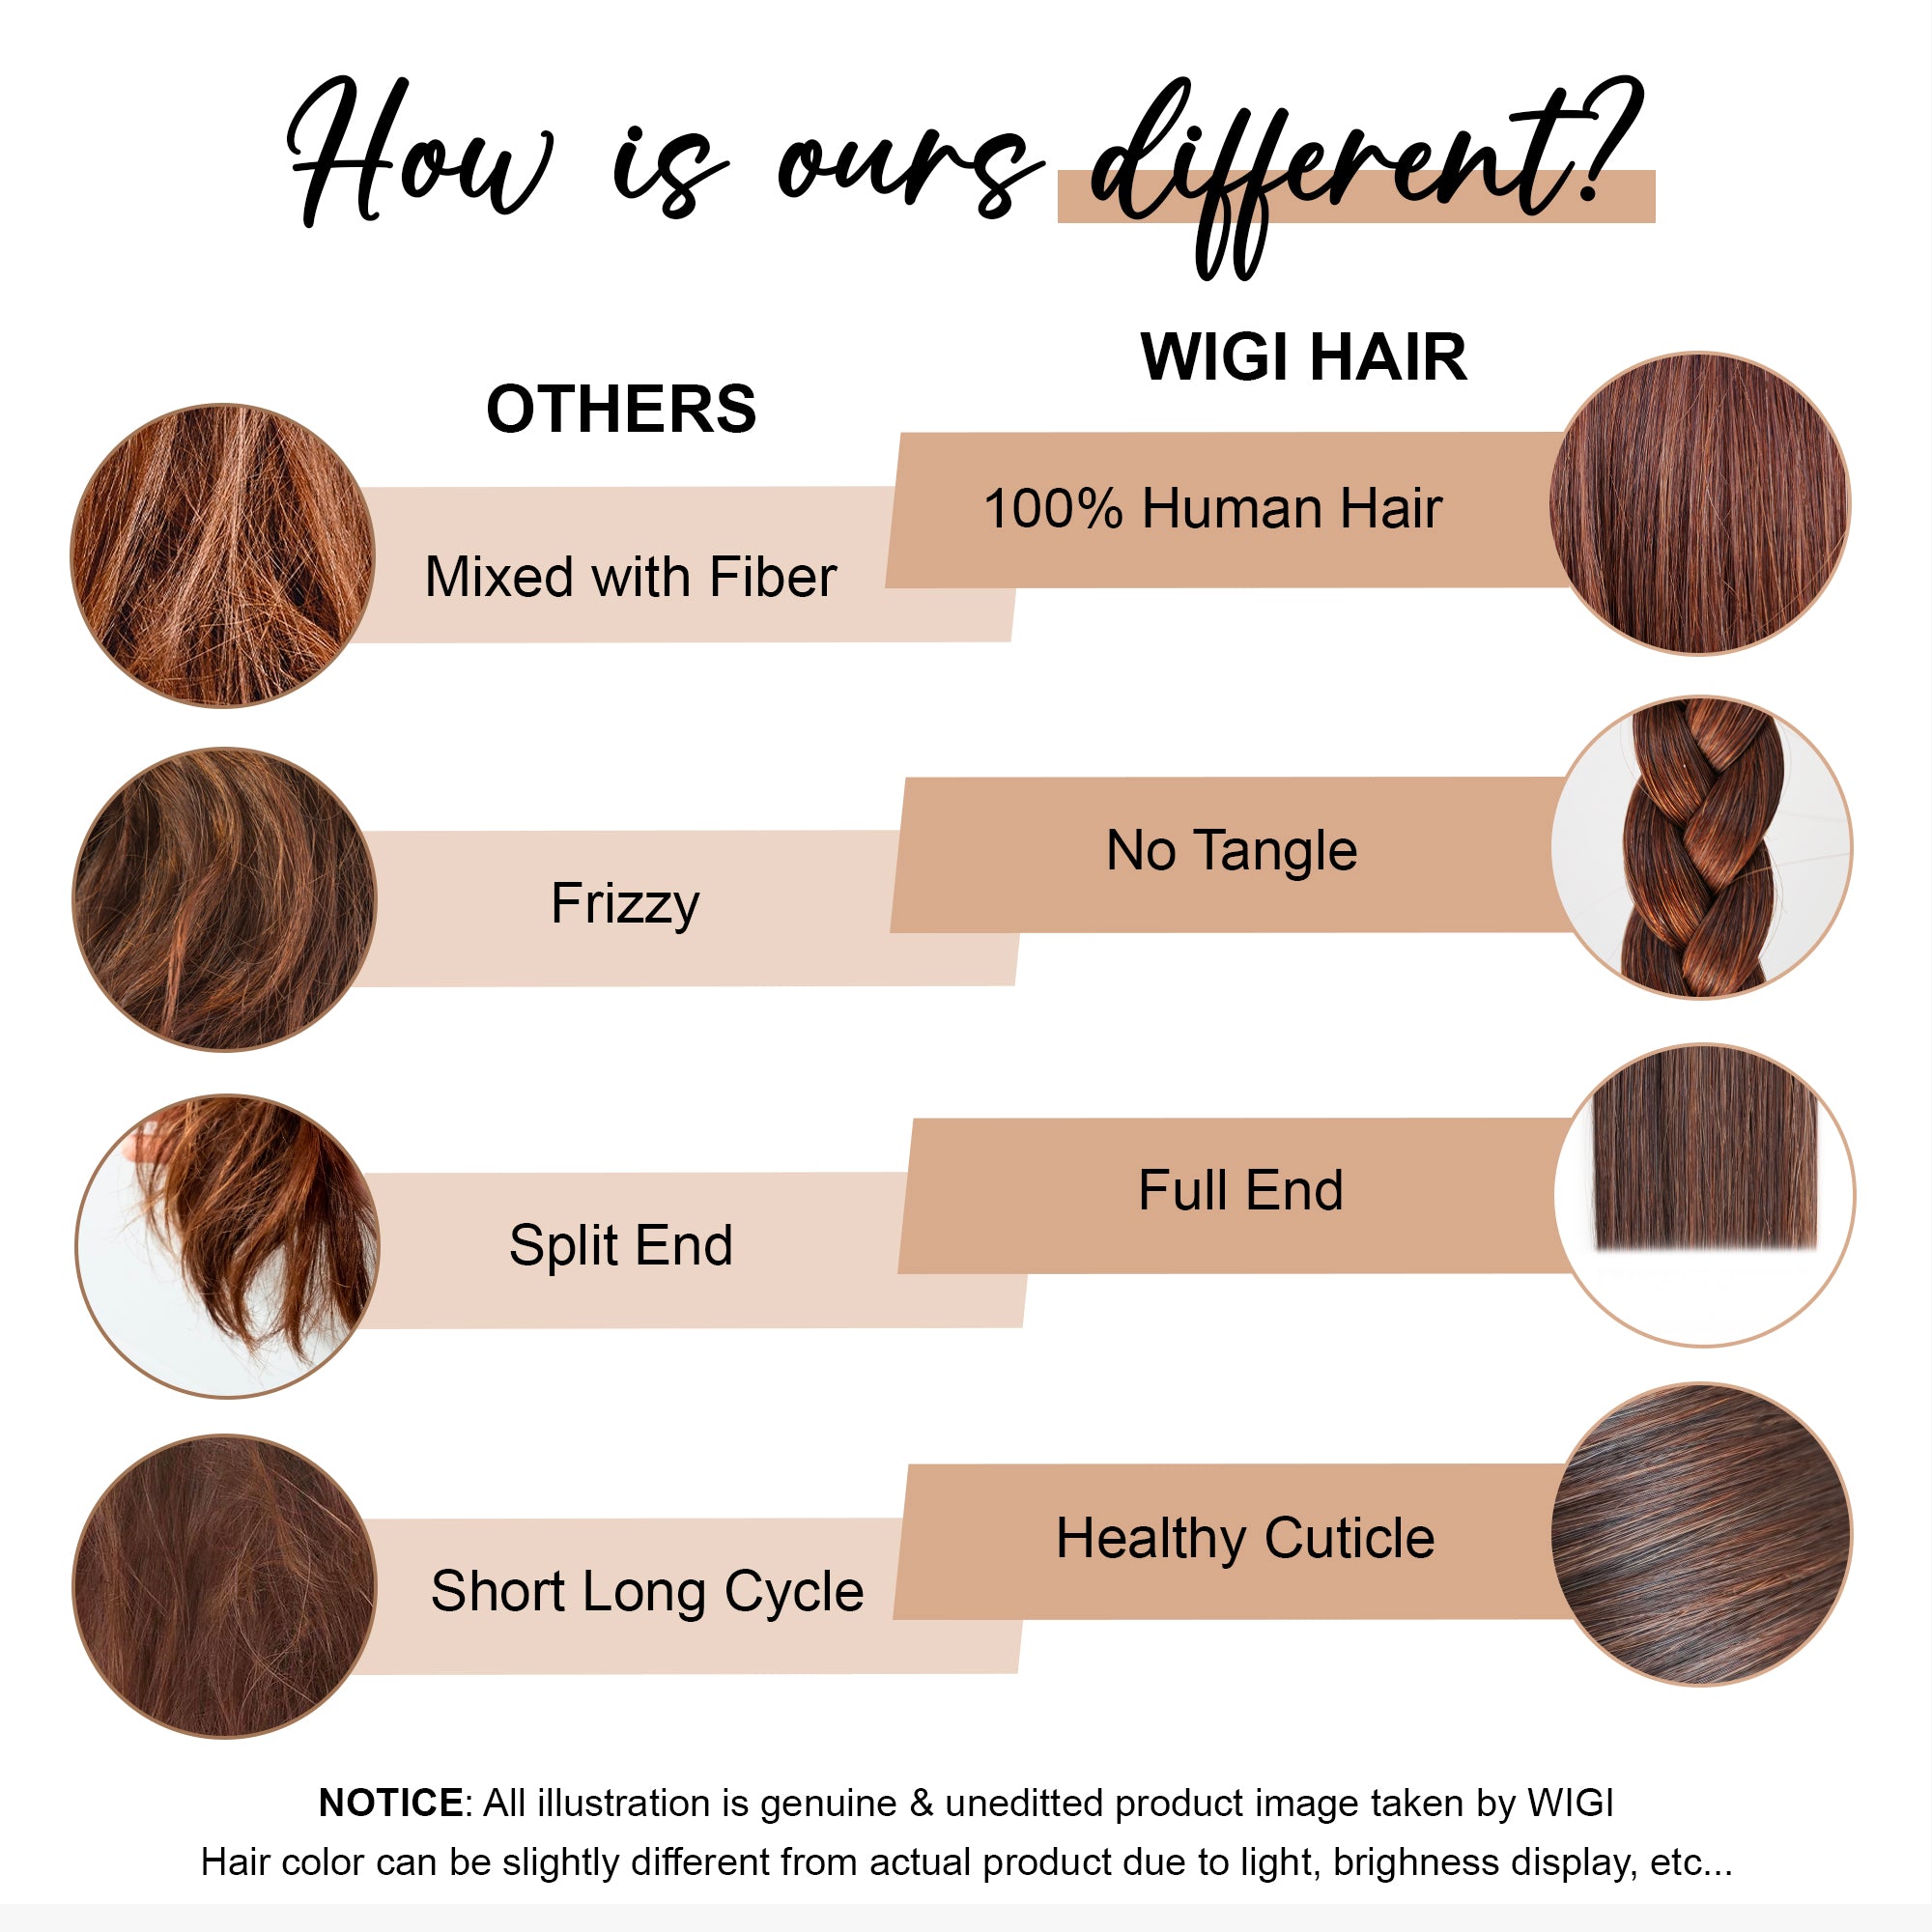 Dark Brown (4) Tape in Hair Extensions - 100% Premium Human Hair